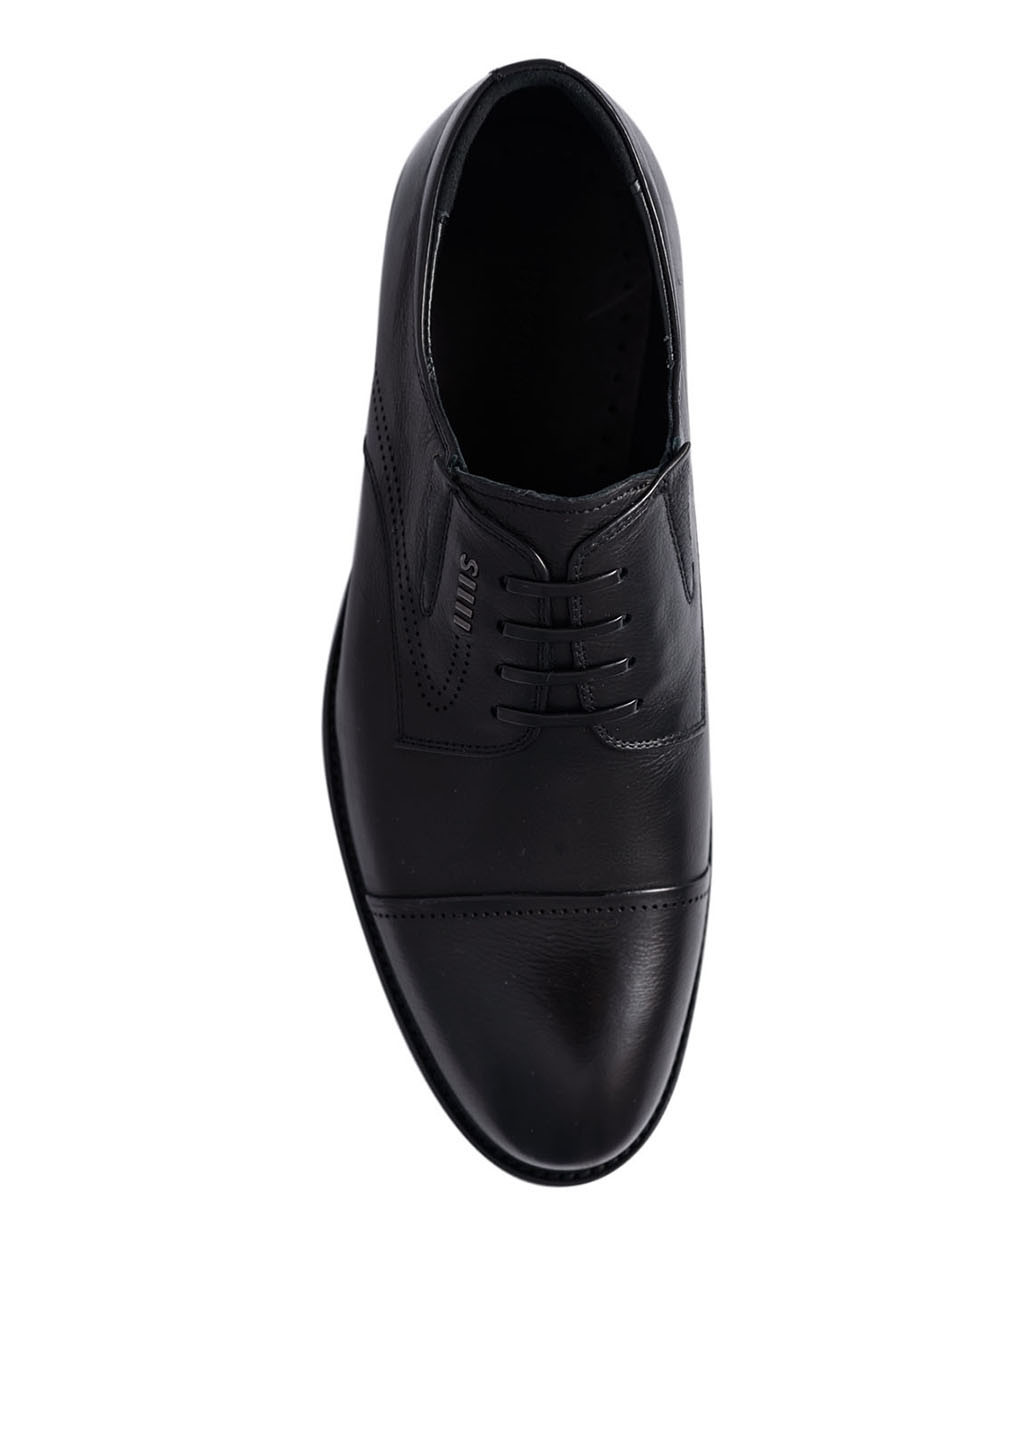 Черные классические туфли Basconi без шнурков